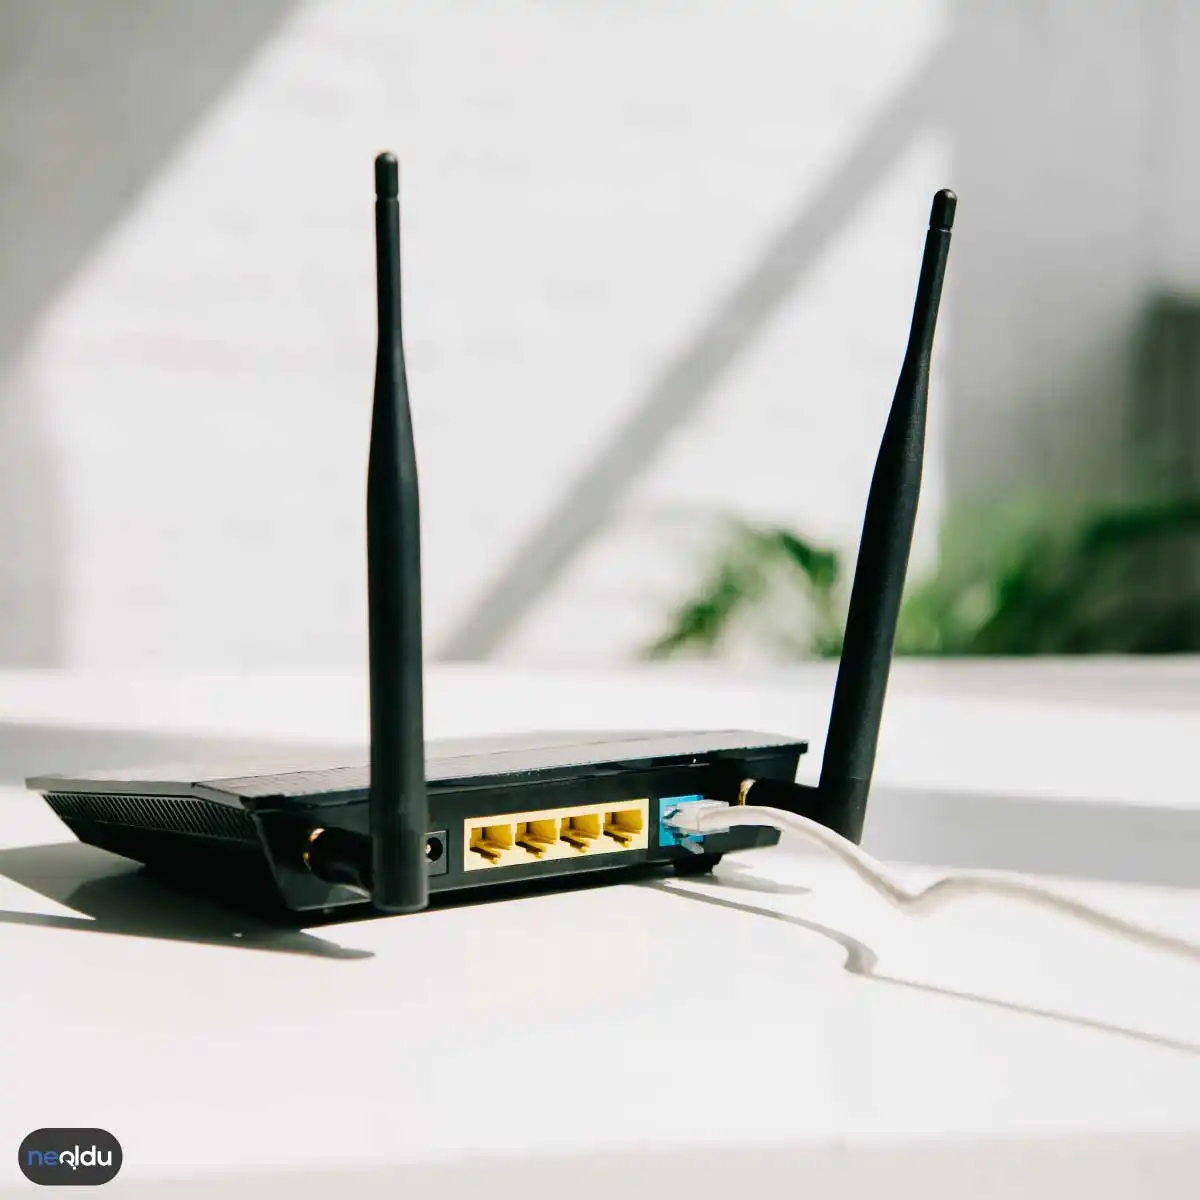 Wi-Fi Kapsama Alanını Genişletmenin Yolları